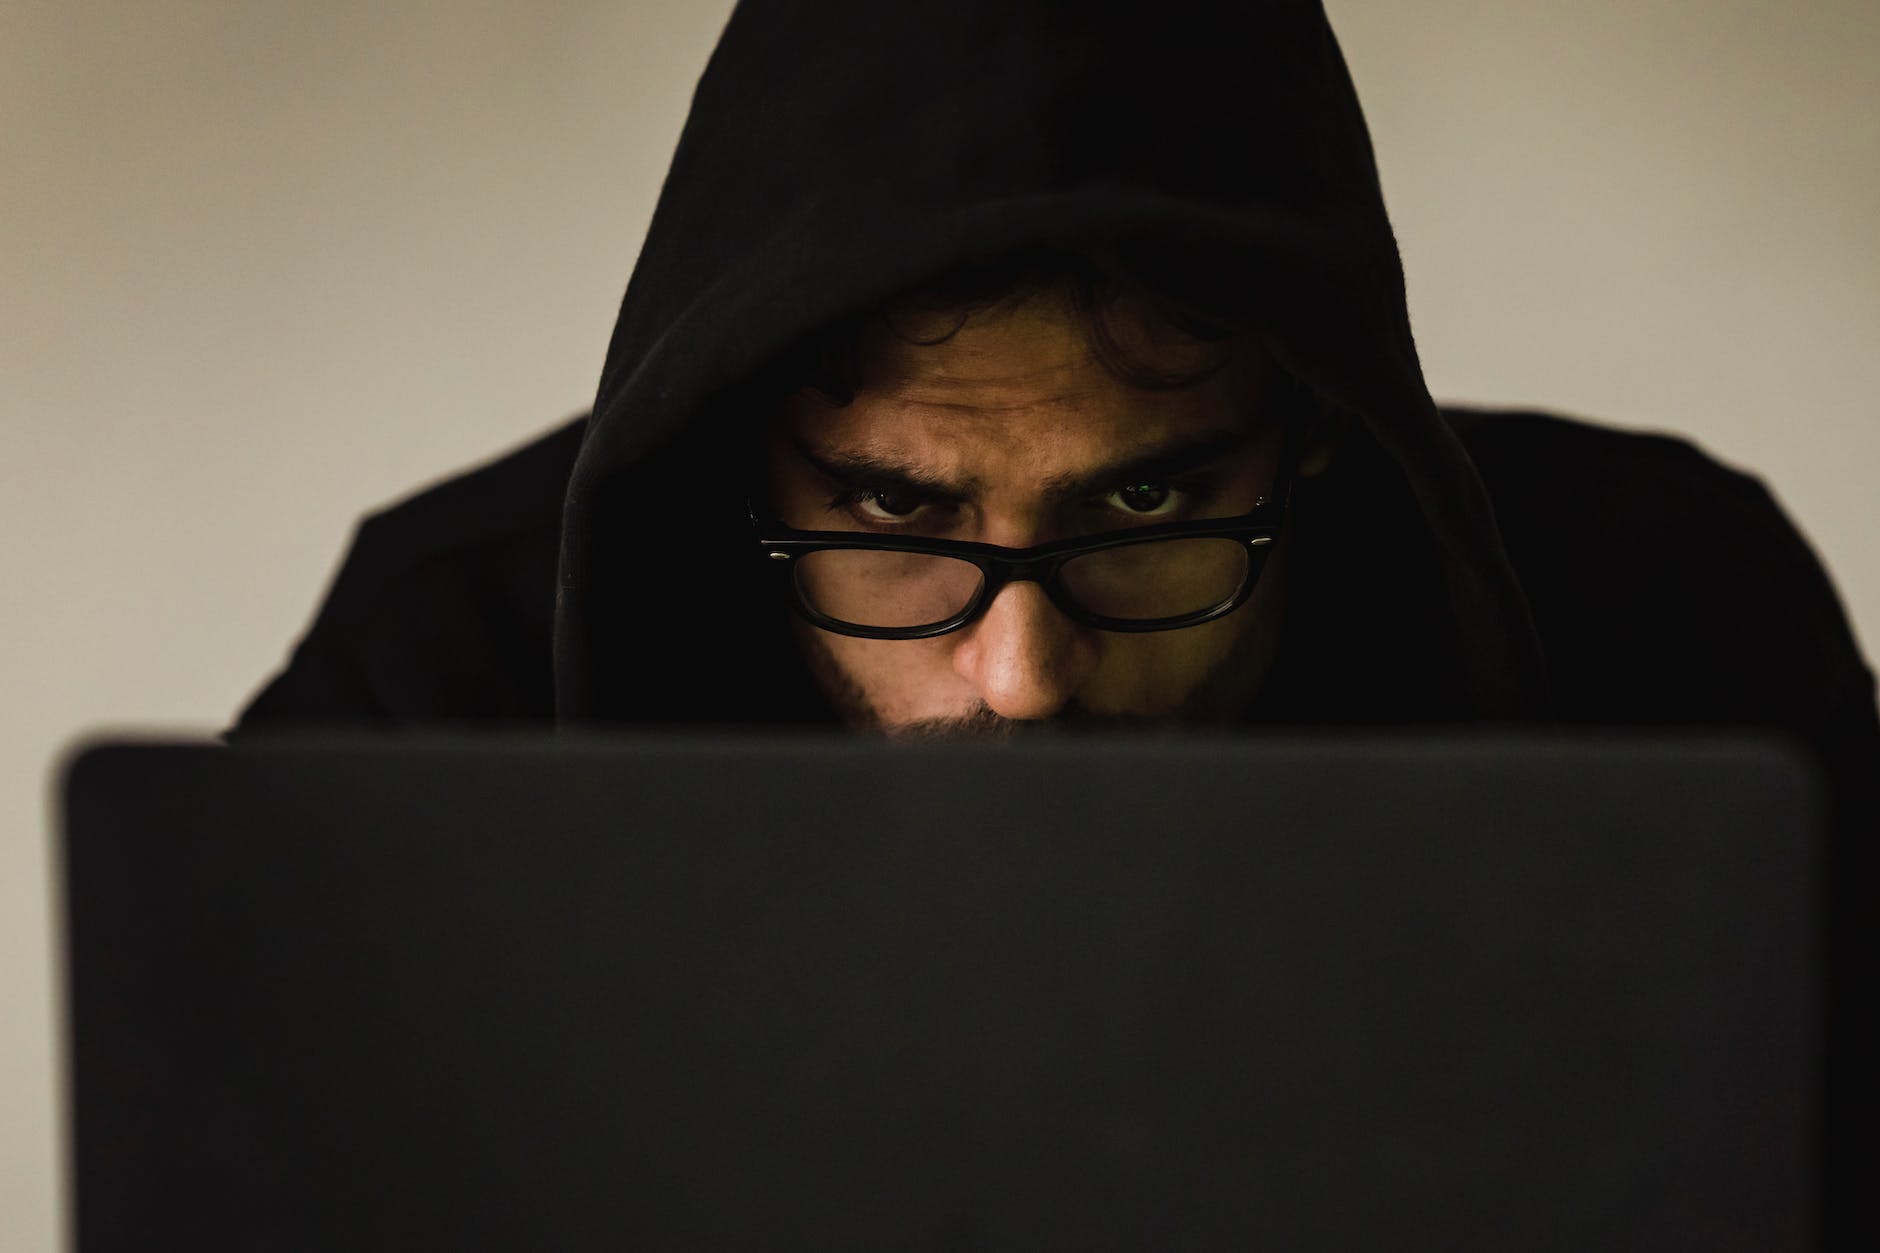 crop focused hacker in hood using laptop